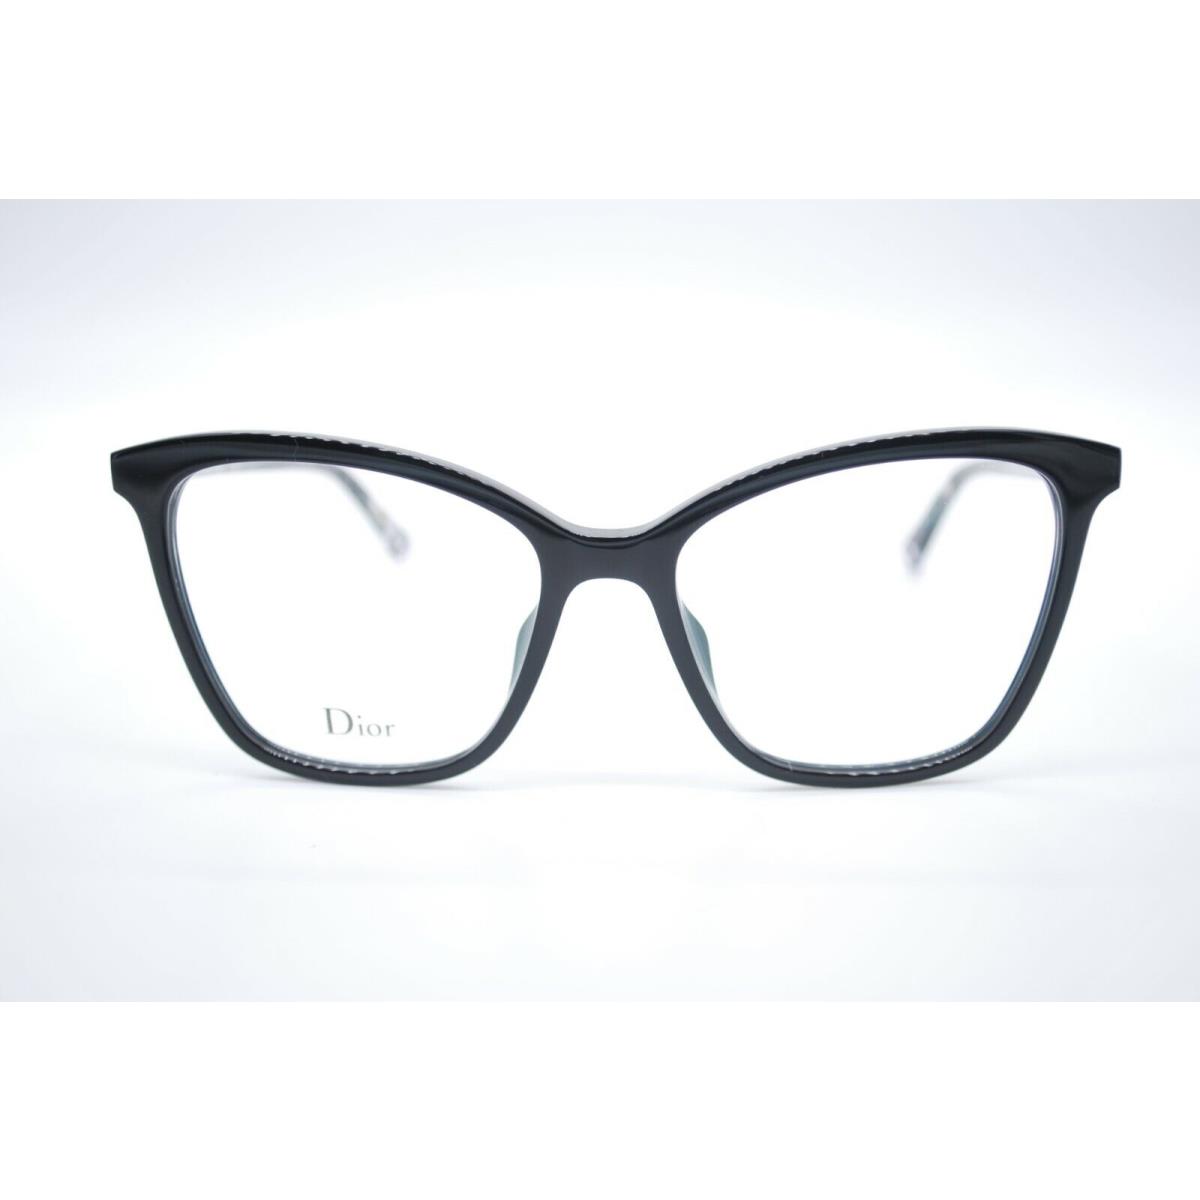 Dior eyeglasses  - Black Frame 1